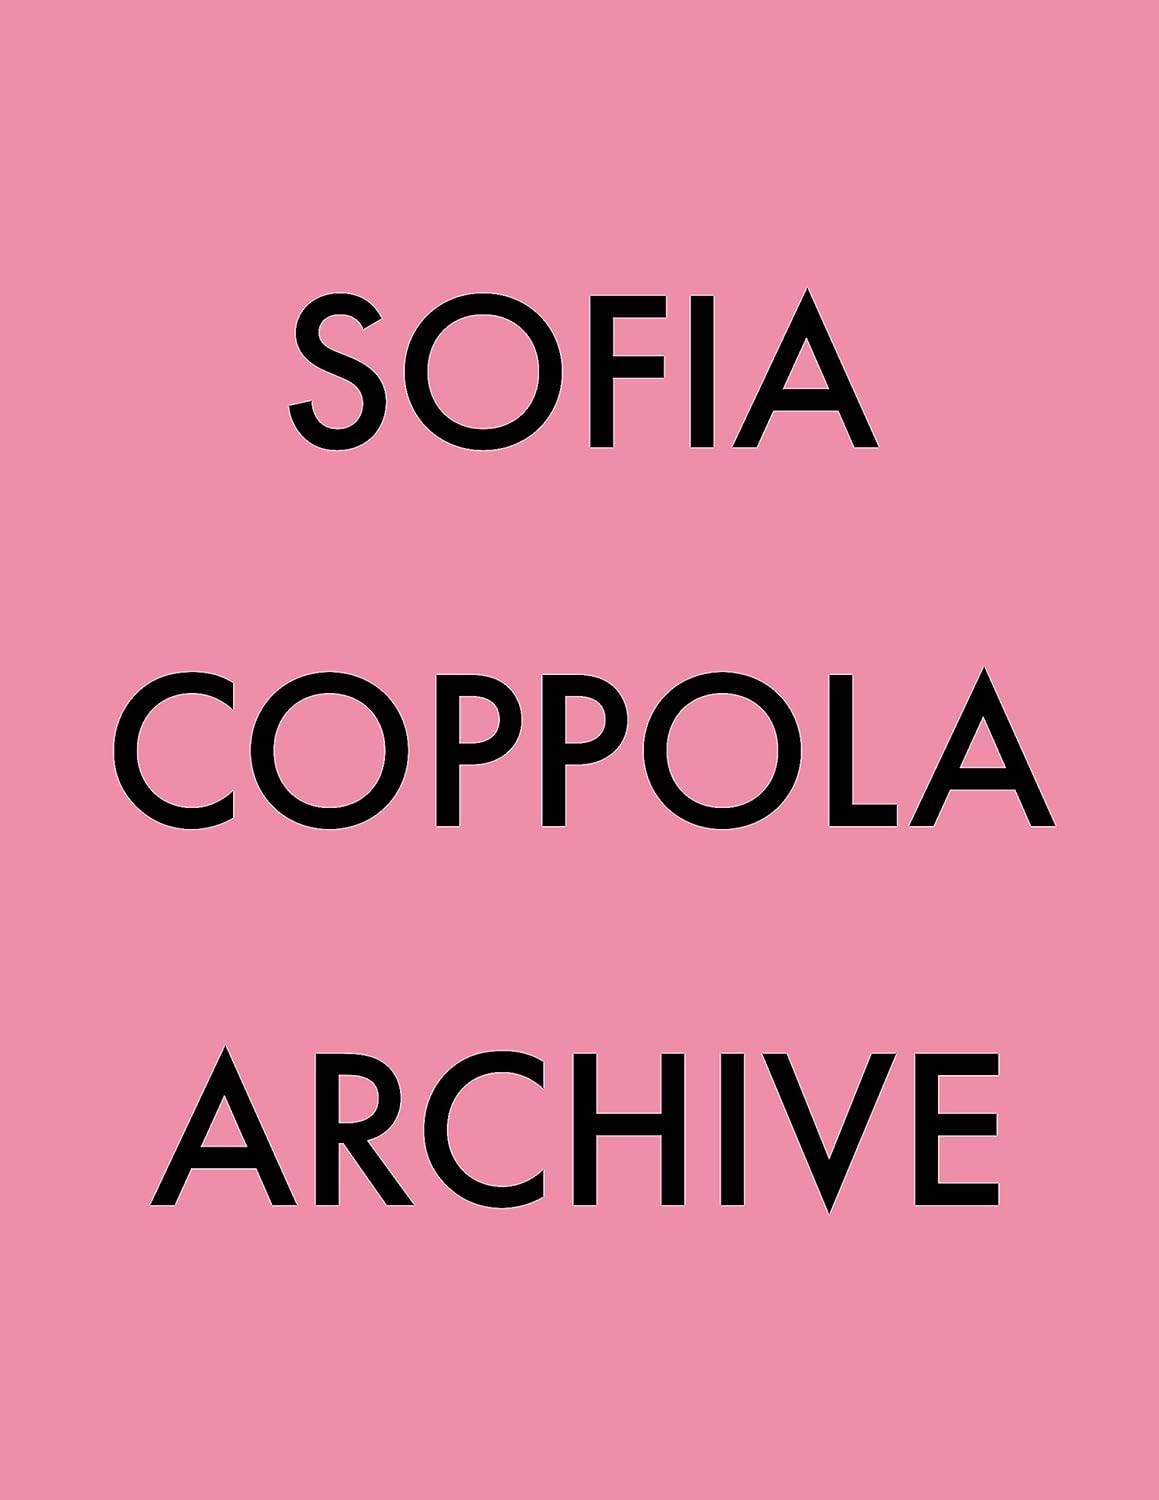 Sofia Coppola Talks Priscilla Presley in W Magazine Vol-5 2023